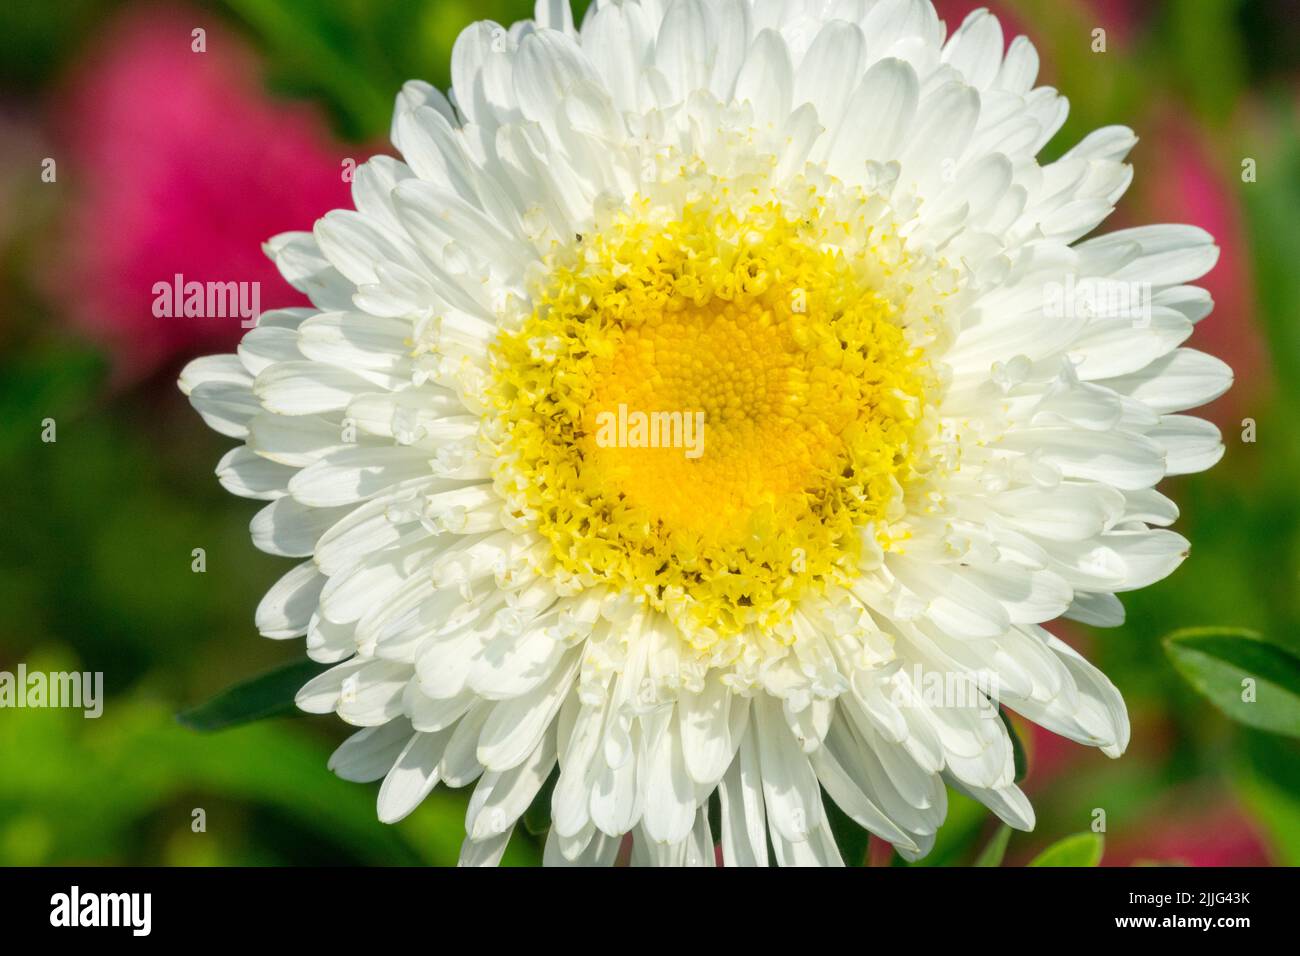 White yellow flower head China Aster, Callistephus chinensis Stock Photo